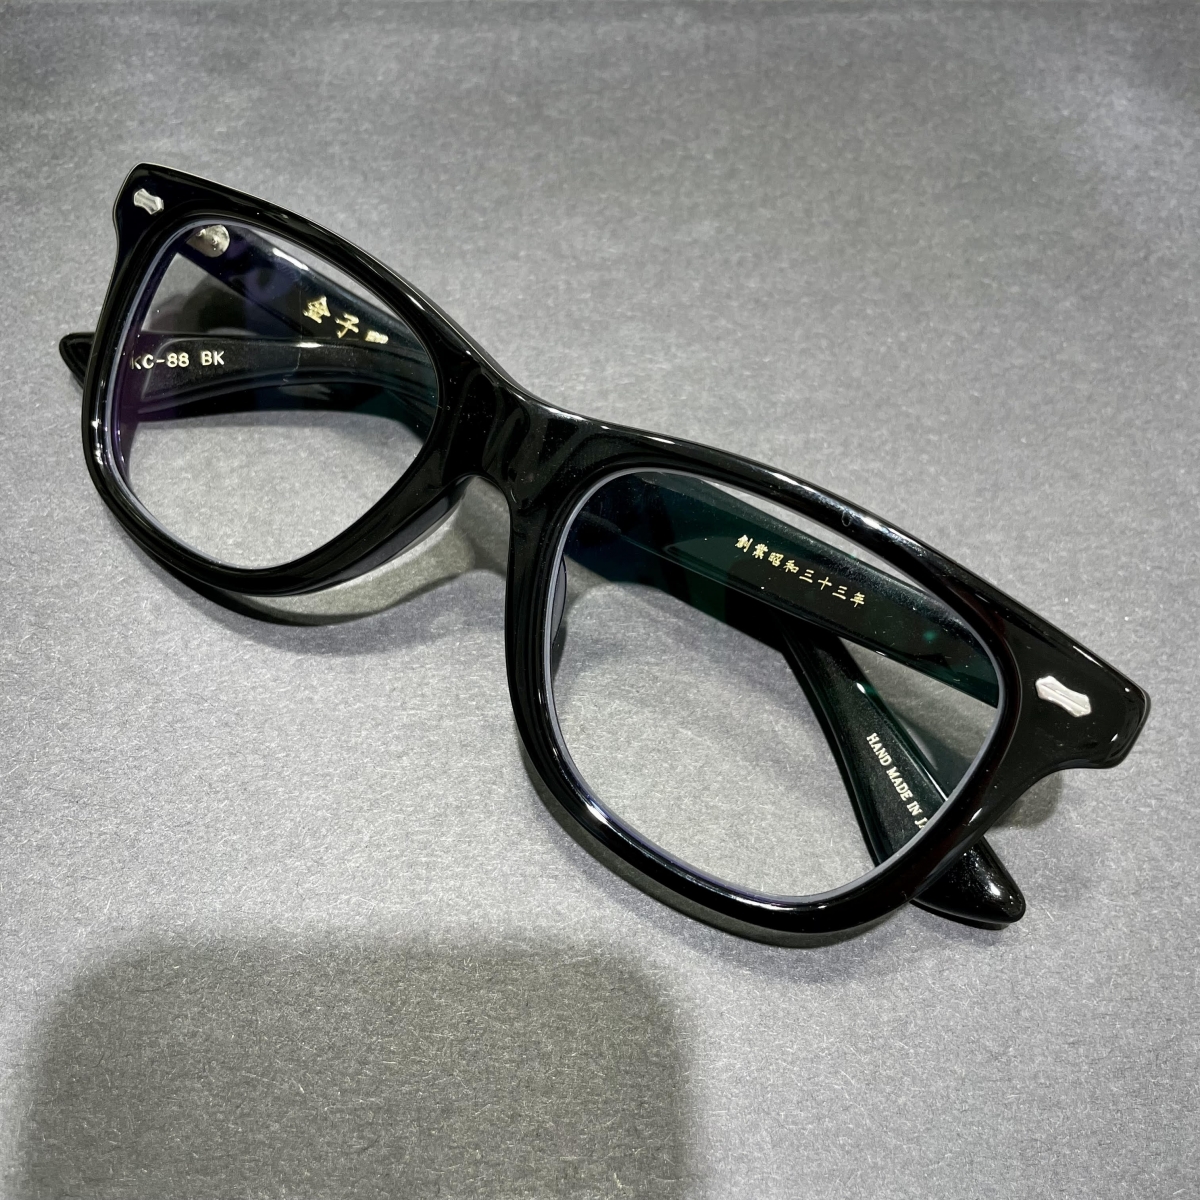 金子眼鏡のKC-88 セルフレーム ウェリントン型 眼鏡の買取実績です。